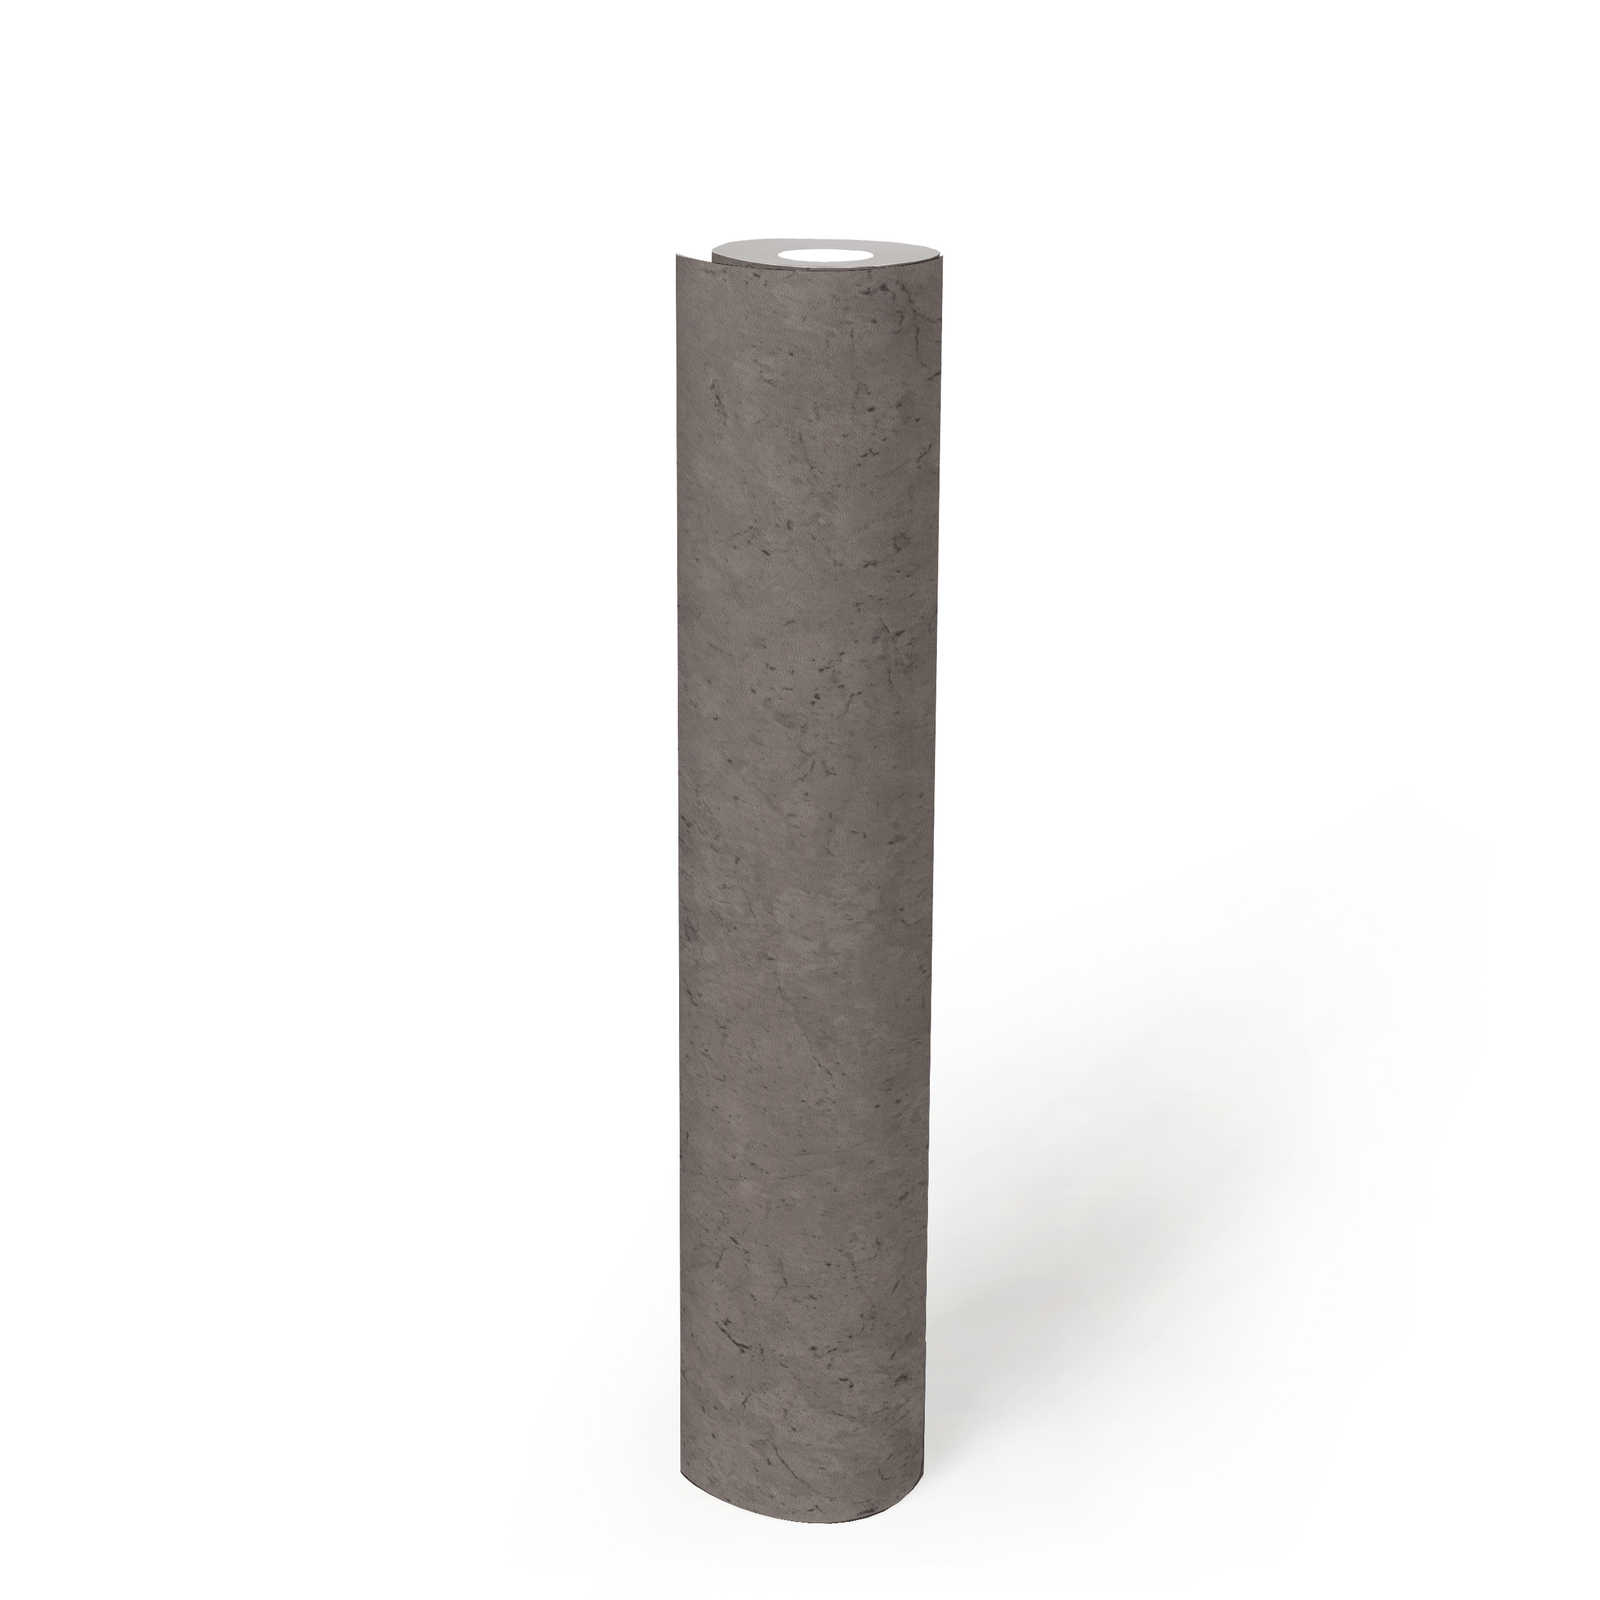             Donker eenheidsbehang met een subtiele betonlook - grijs
        